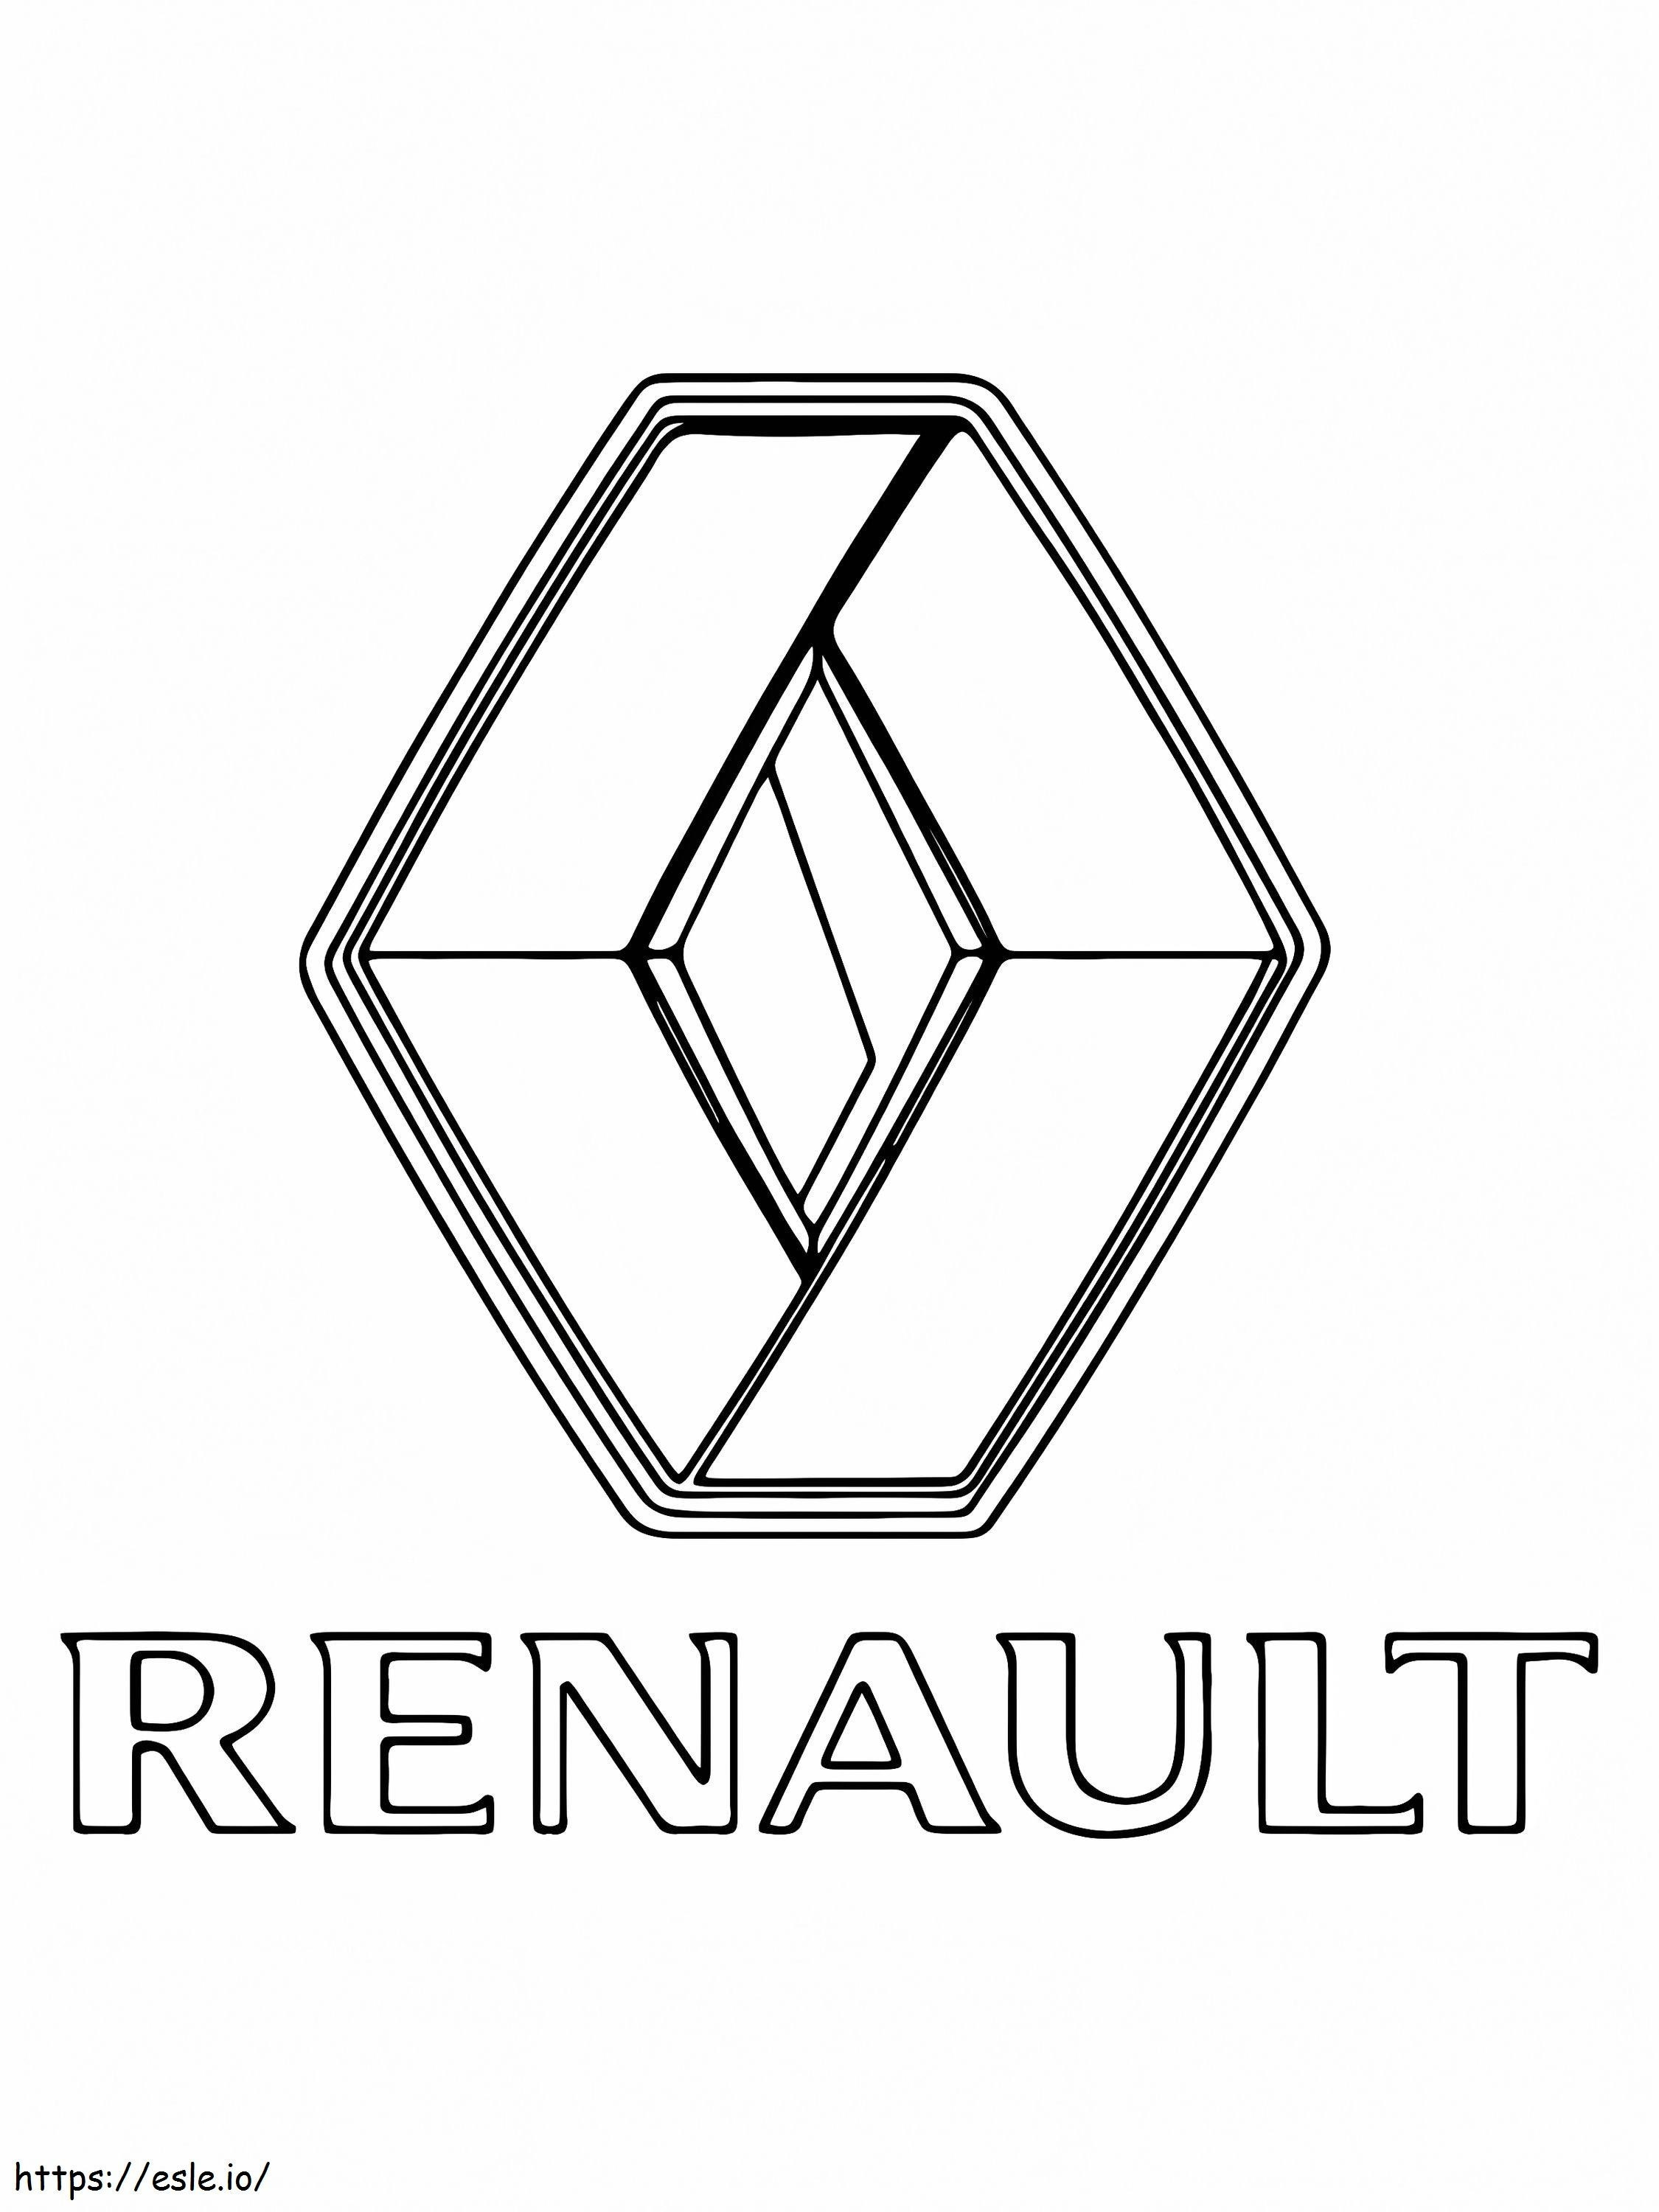 Logo dell'auto Renault da colorare